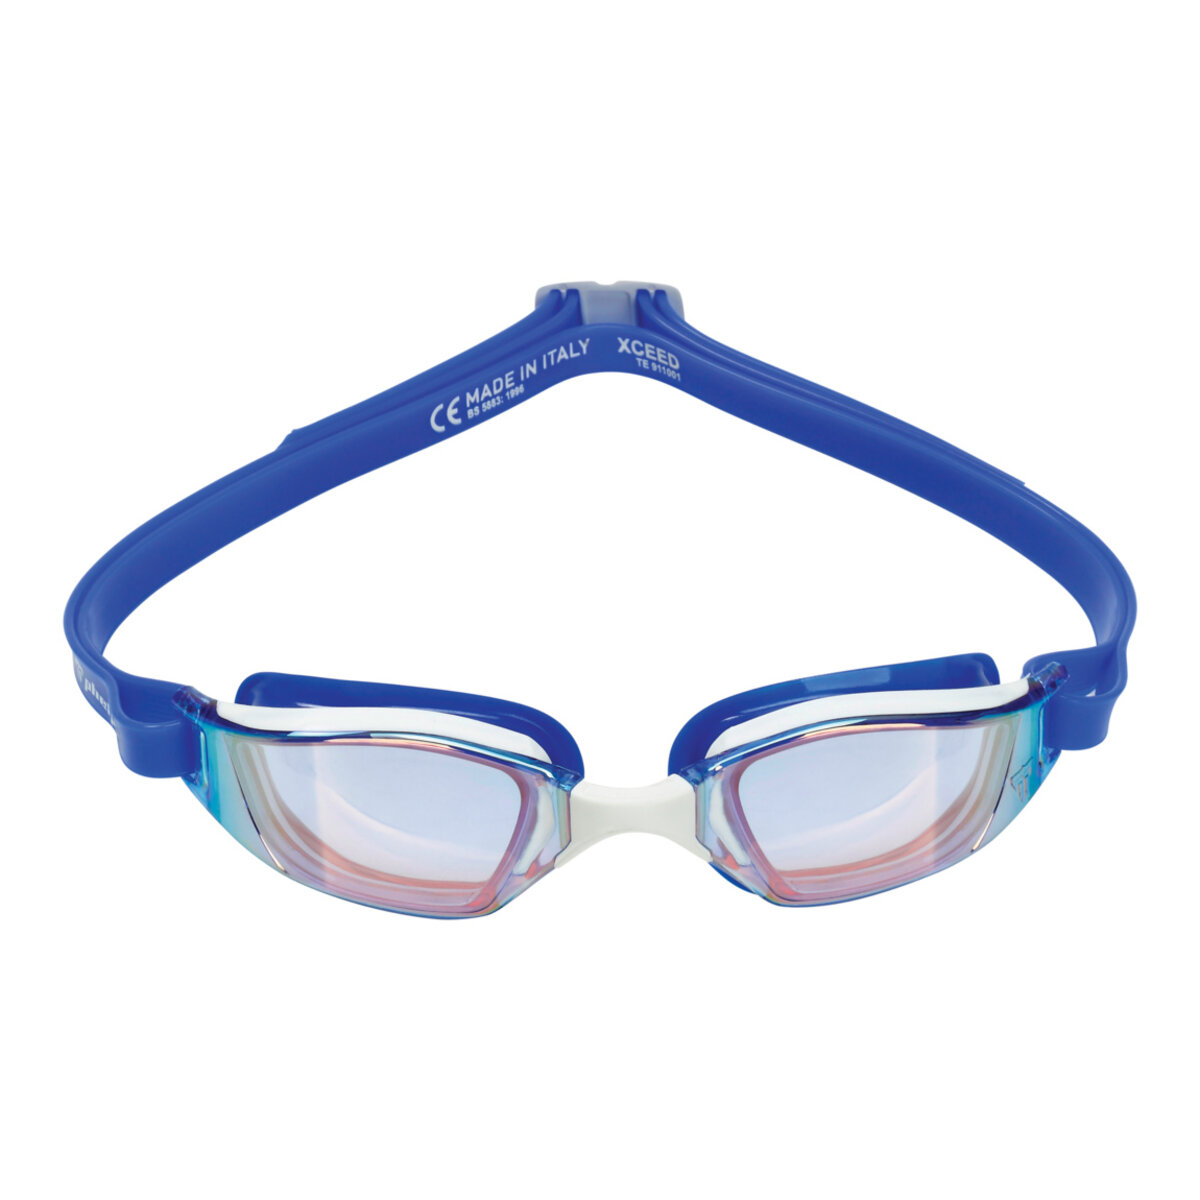 Очки для плавания Xceed Phelps линзы голубые переливающиеся, цвет силикона: white/blue